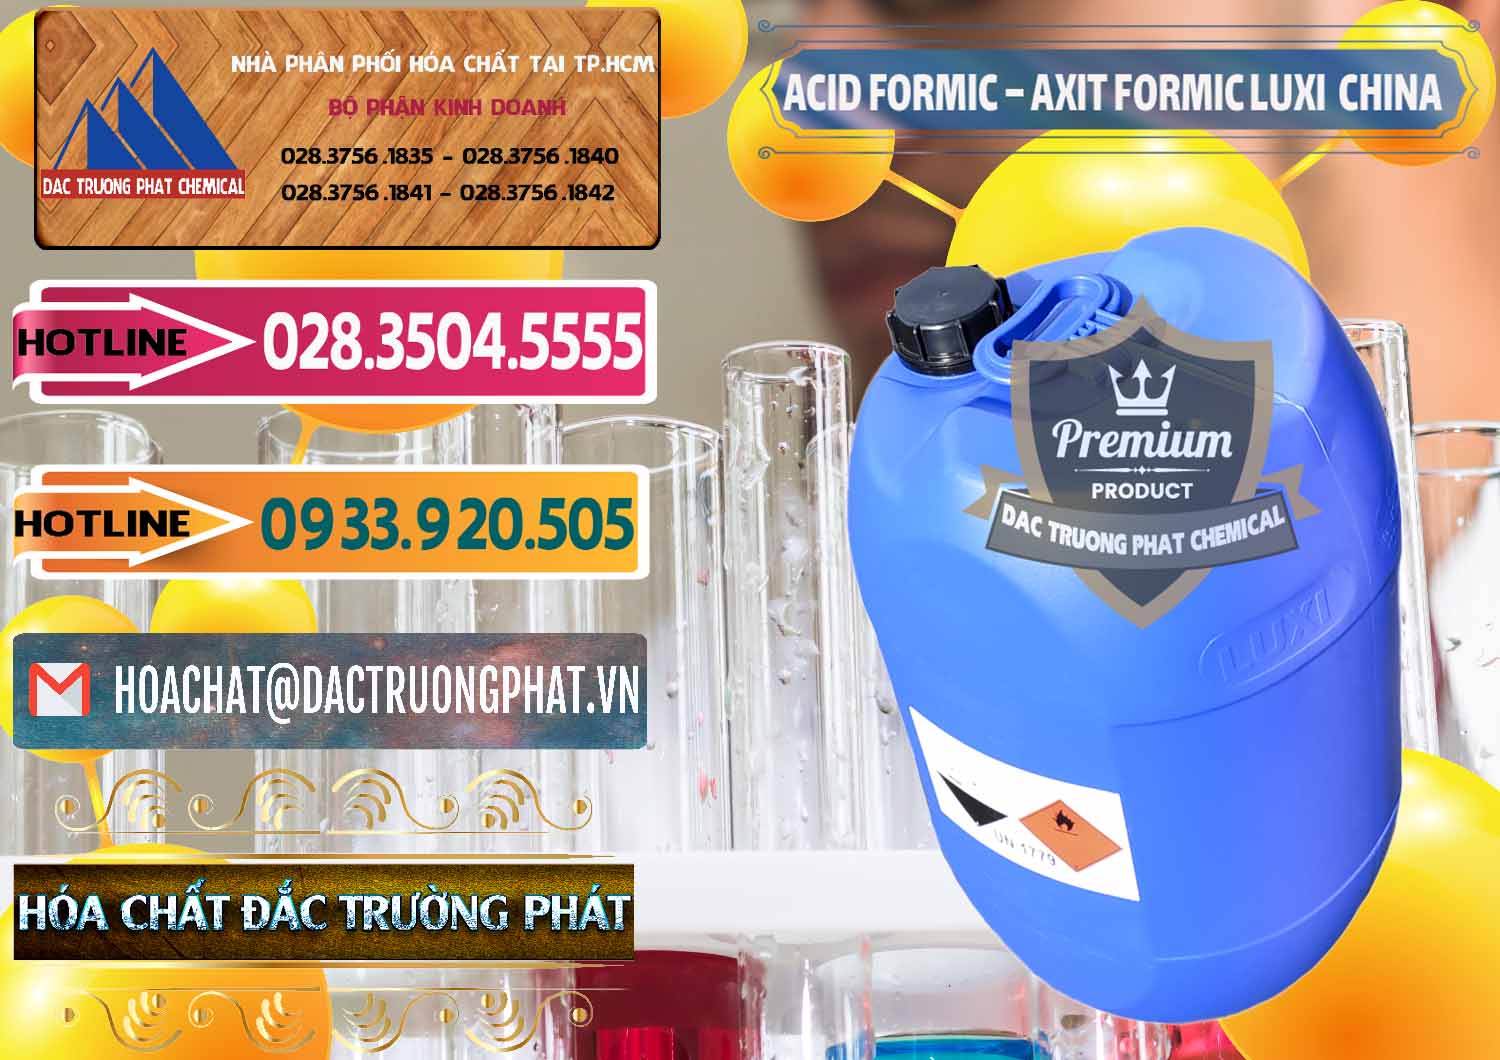 Chuyên cung ứng - bán Acid Formic - Axit Formic Luxi Trung Quốc China - 0029 - Cty chuyên bán ( cung cấp ) hóa chất tại TP.HCM - dactruongphat.vn